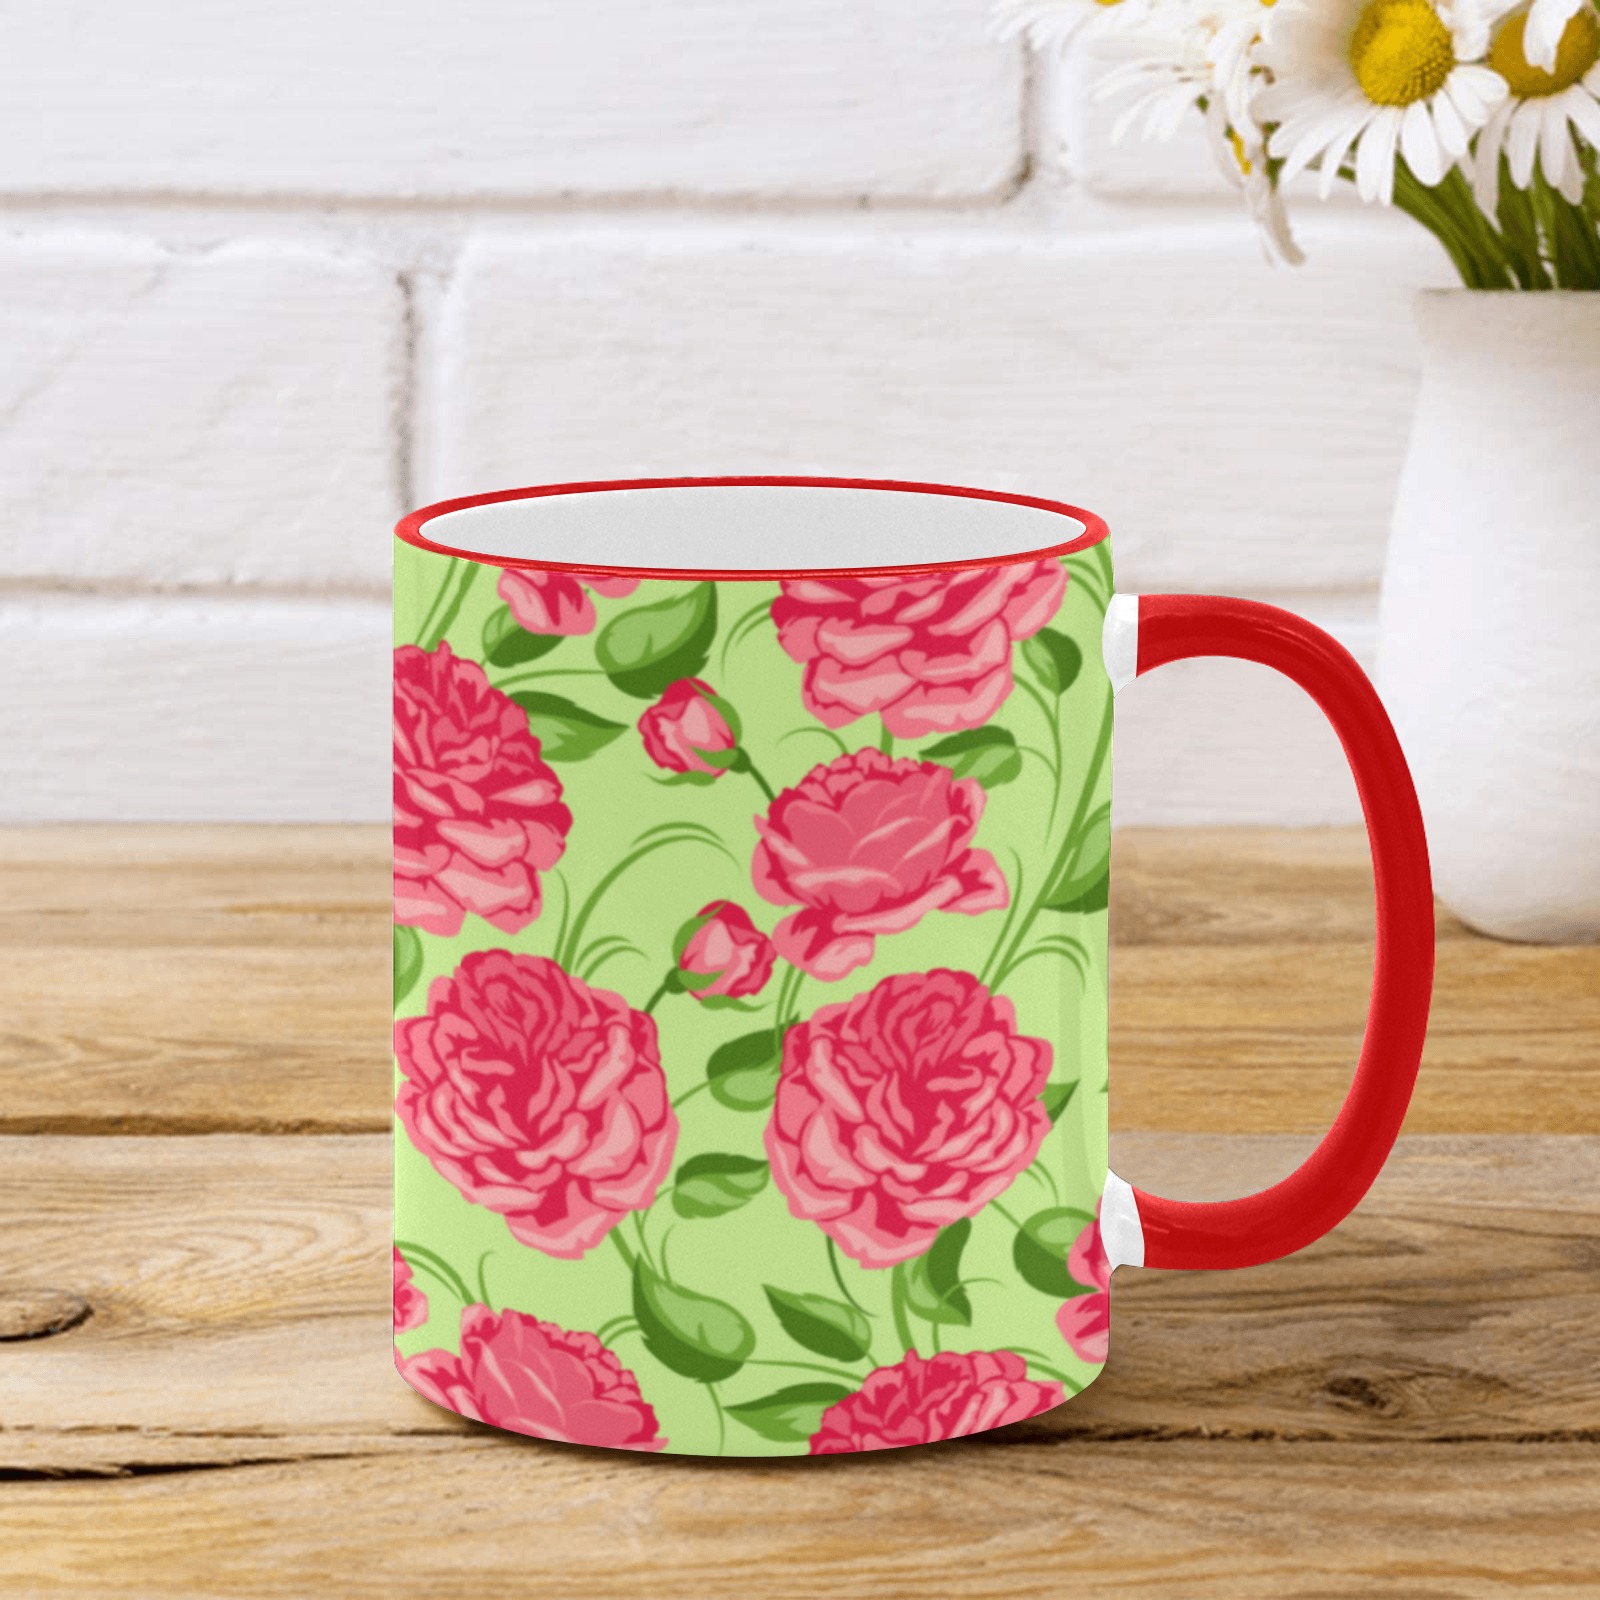 Tea Roses Custom Edge Color Mug (11oz)